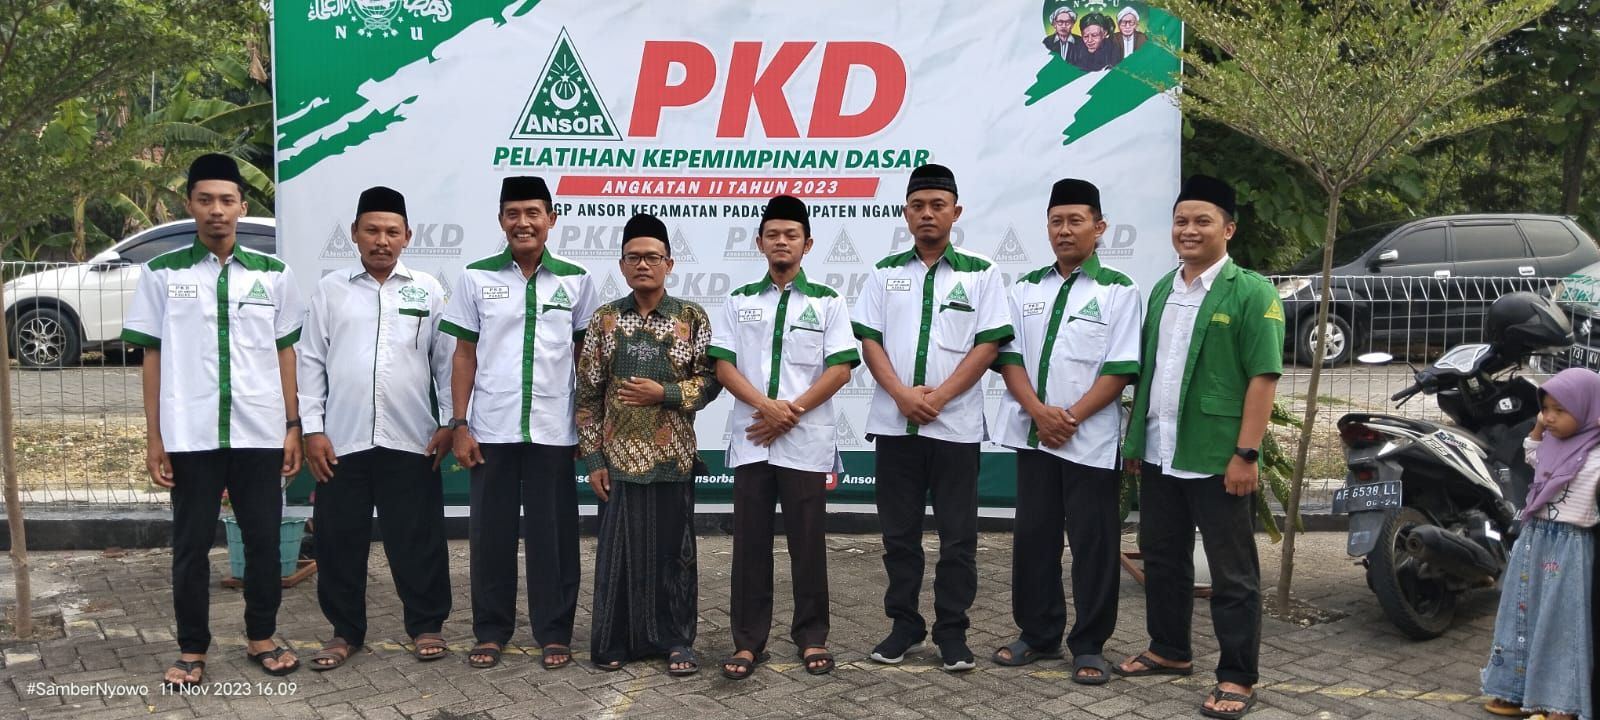 Beberapa Tokoh Masyarakat mulai dari anggota DPRD Ngawi, Kepala Desa, dan tokoh karangtaruna ikut PKD PAC GP ANSOR PADAS